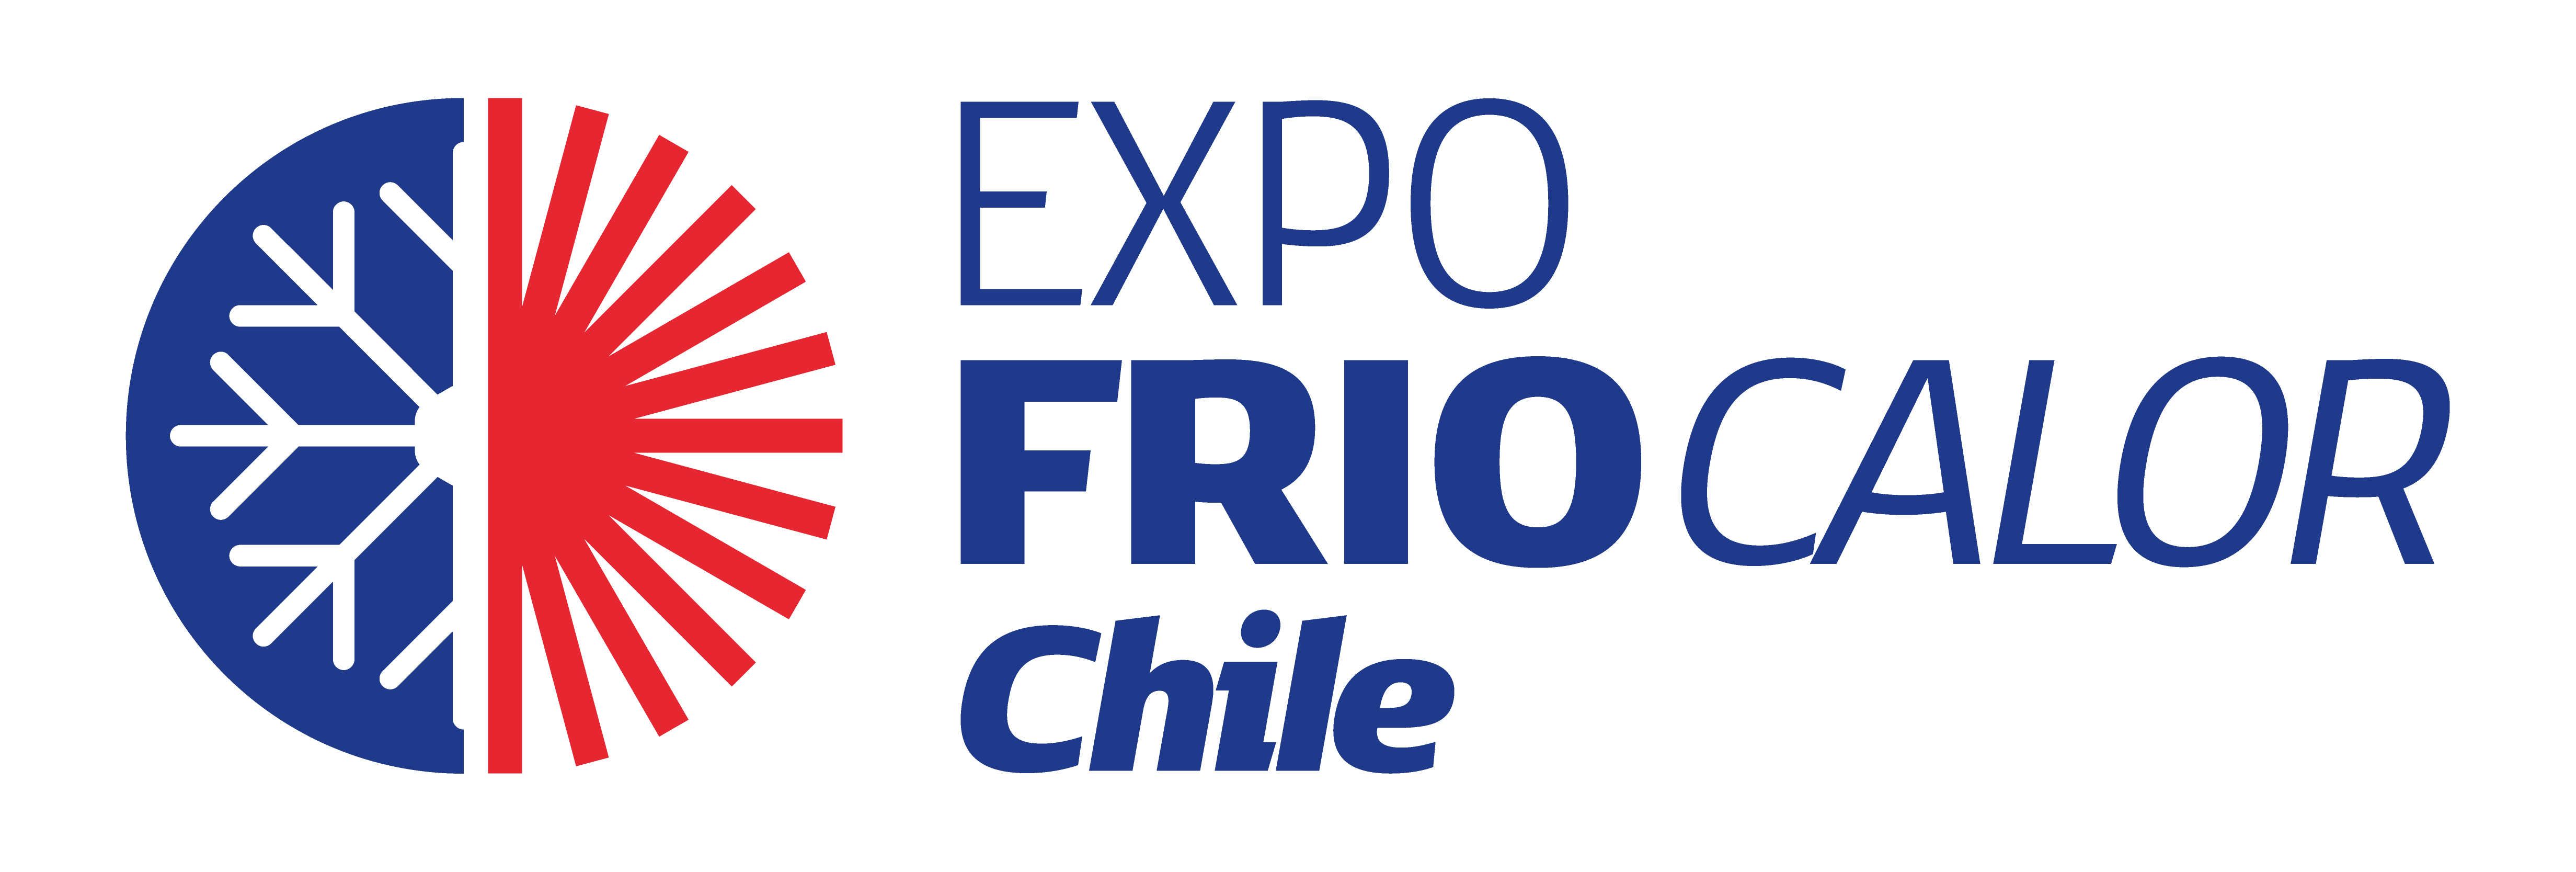 Expo Frío Calor Chile